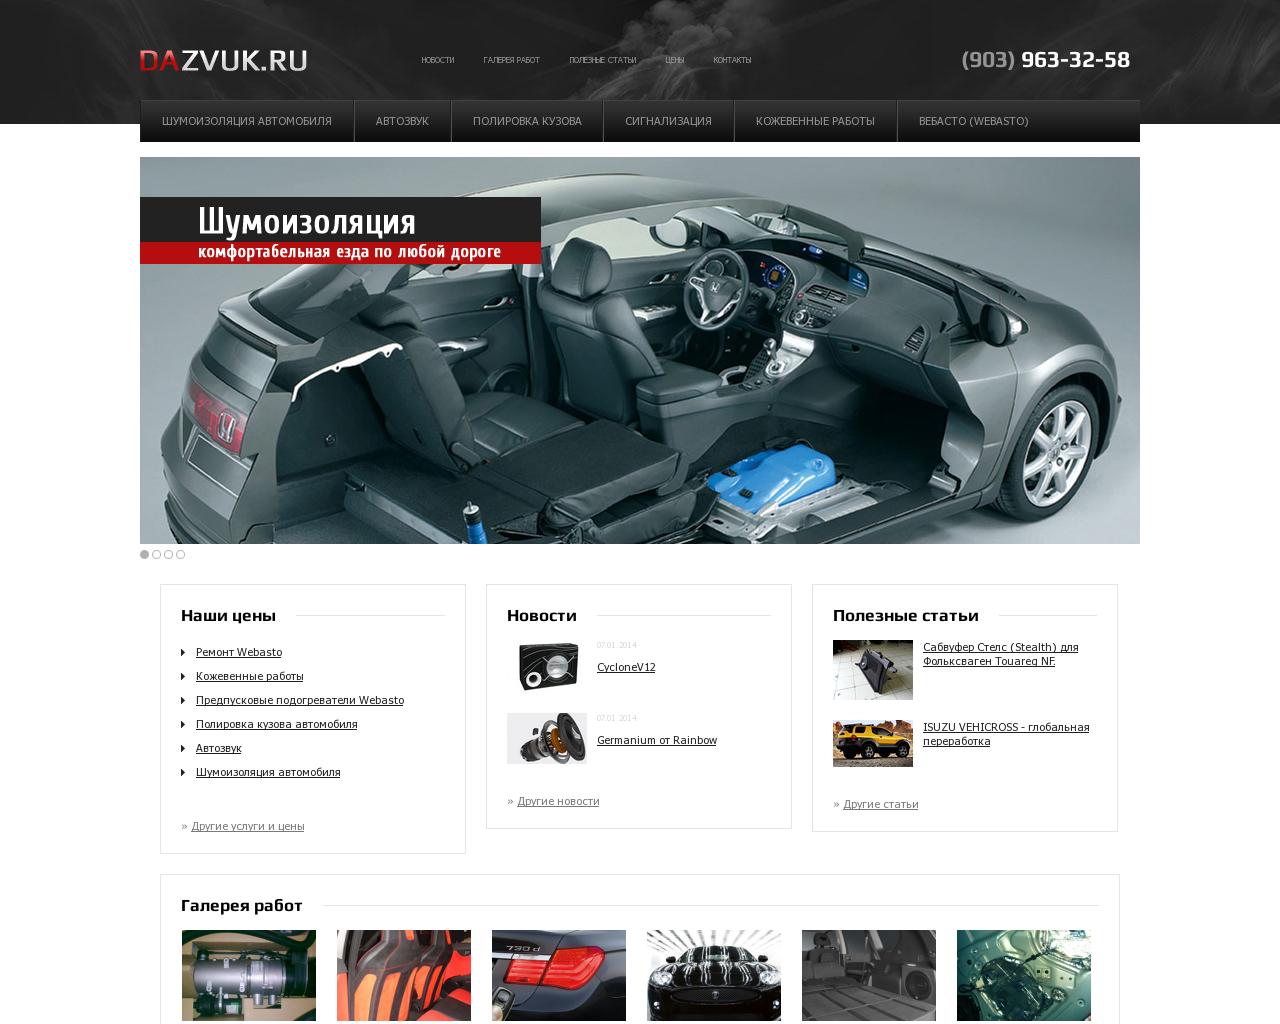 Изображение сайта dazvuk.ru в разрешении 1280x1024